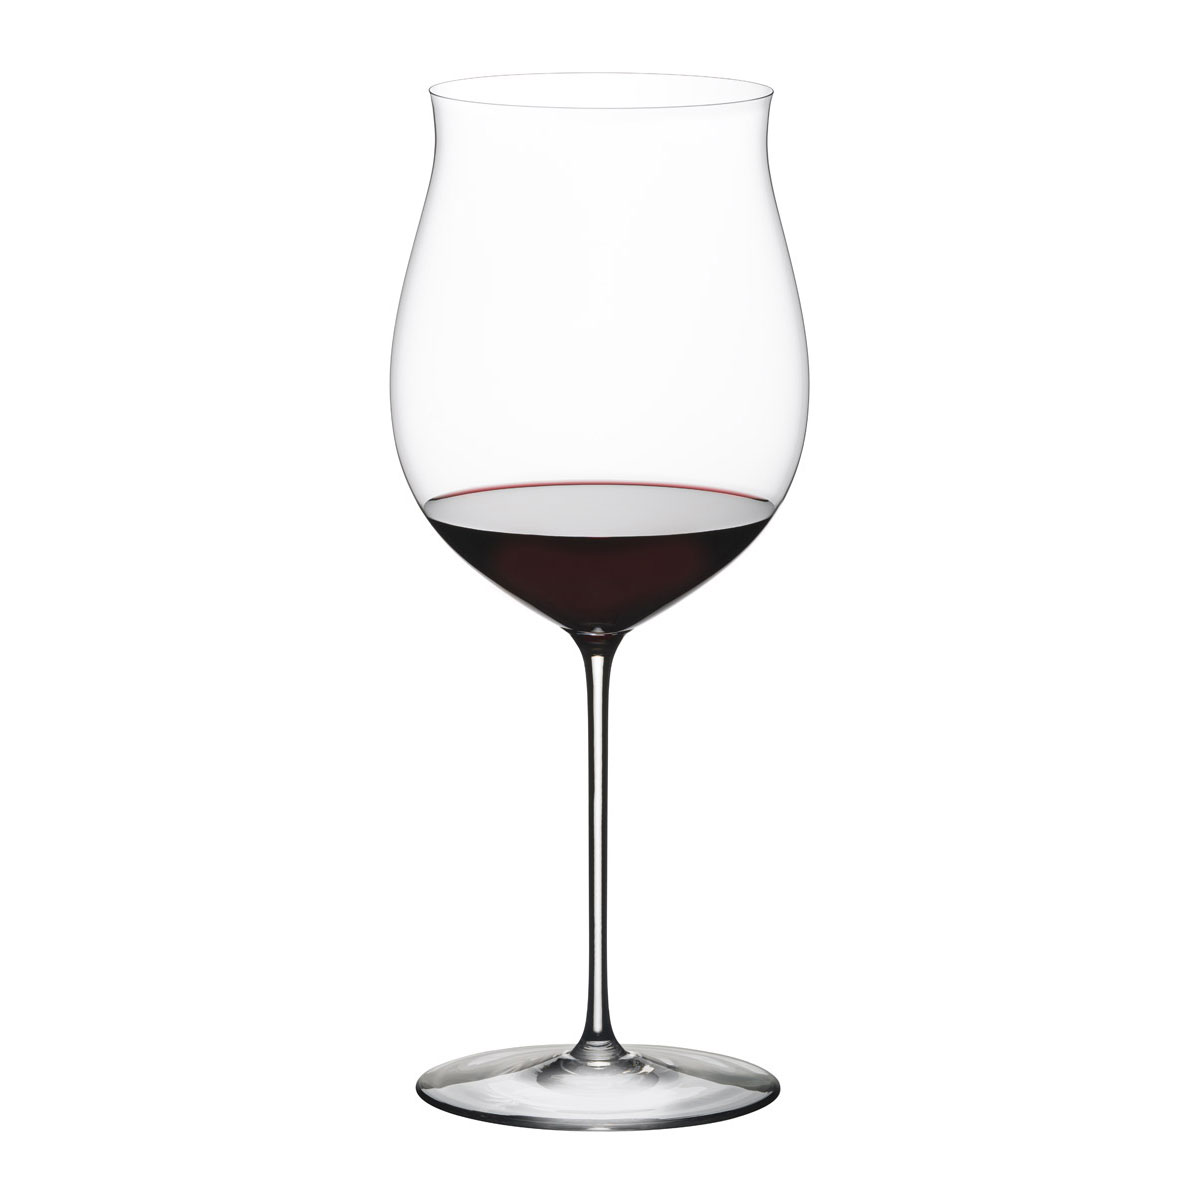 Riedel Sommeliers, Hand Made, Superleggero Burgundy Grand Cru Wine Glass, Single